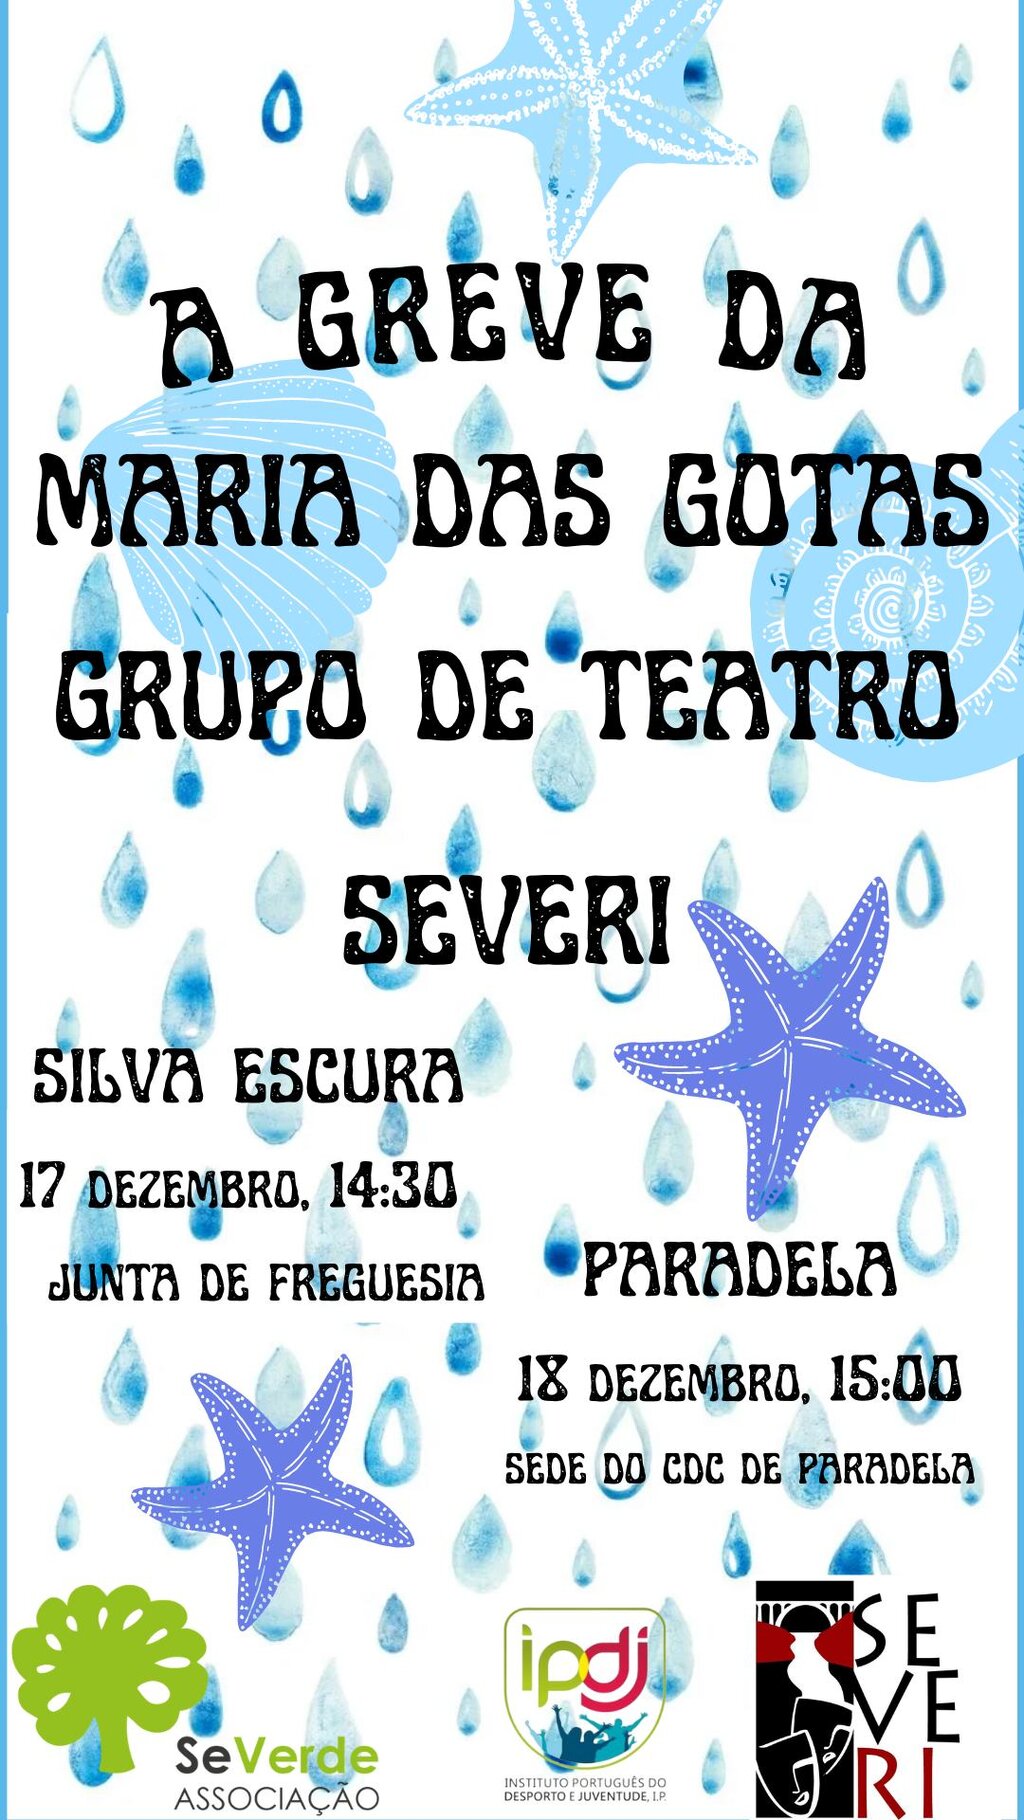 17 dez - teatro - A Greve da Maria das Gotas - em Silva Escura